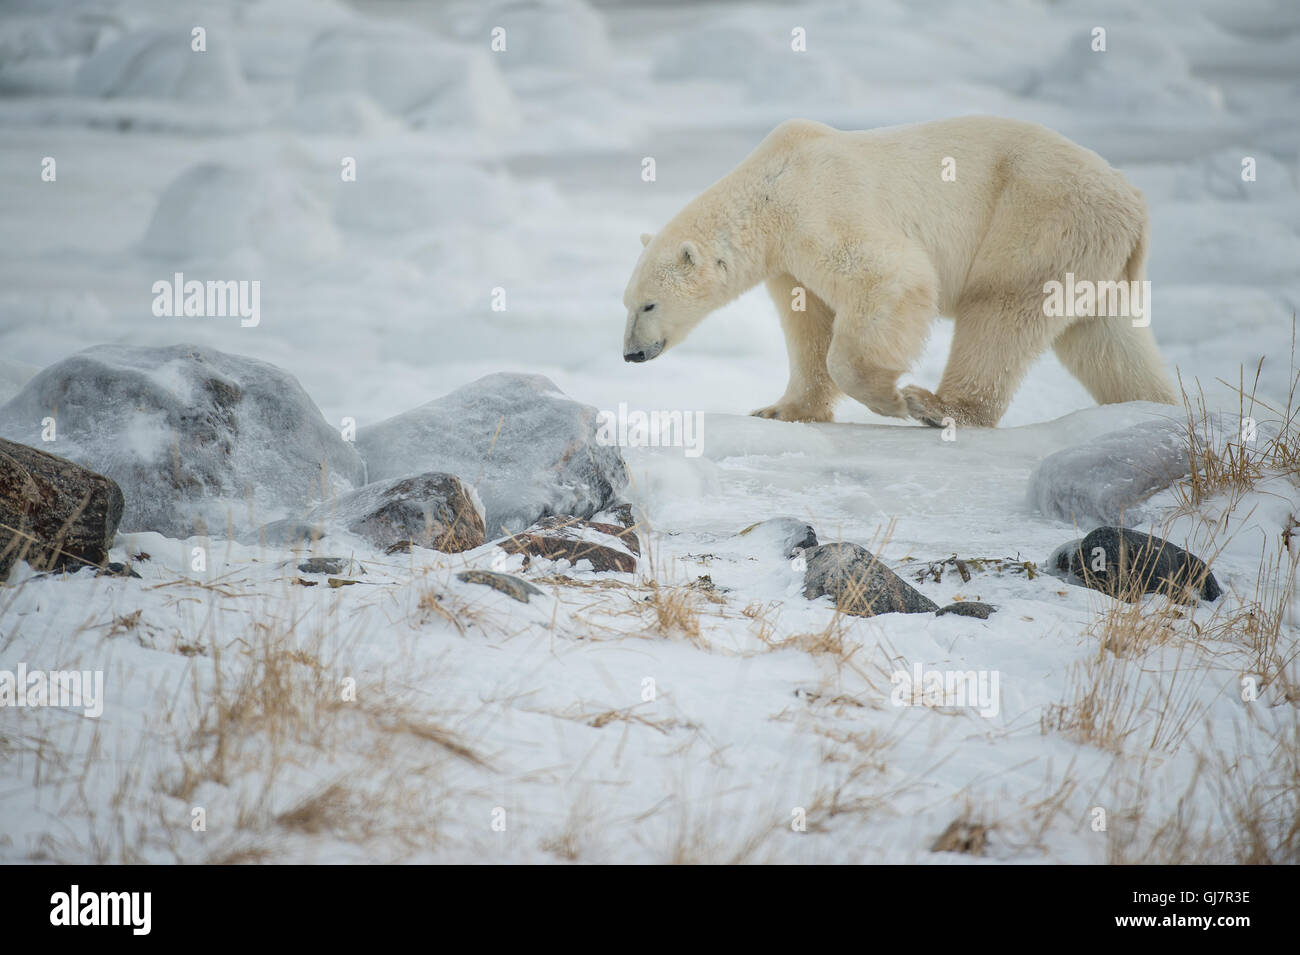 Polar Bear walking on tundra Stock Photo